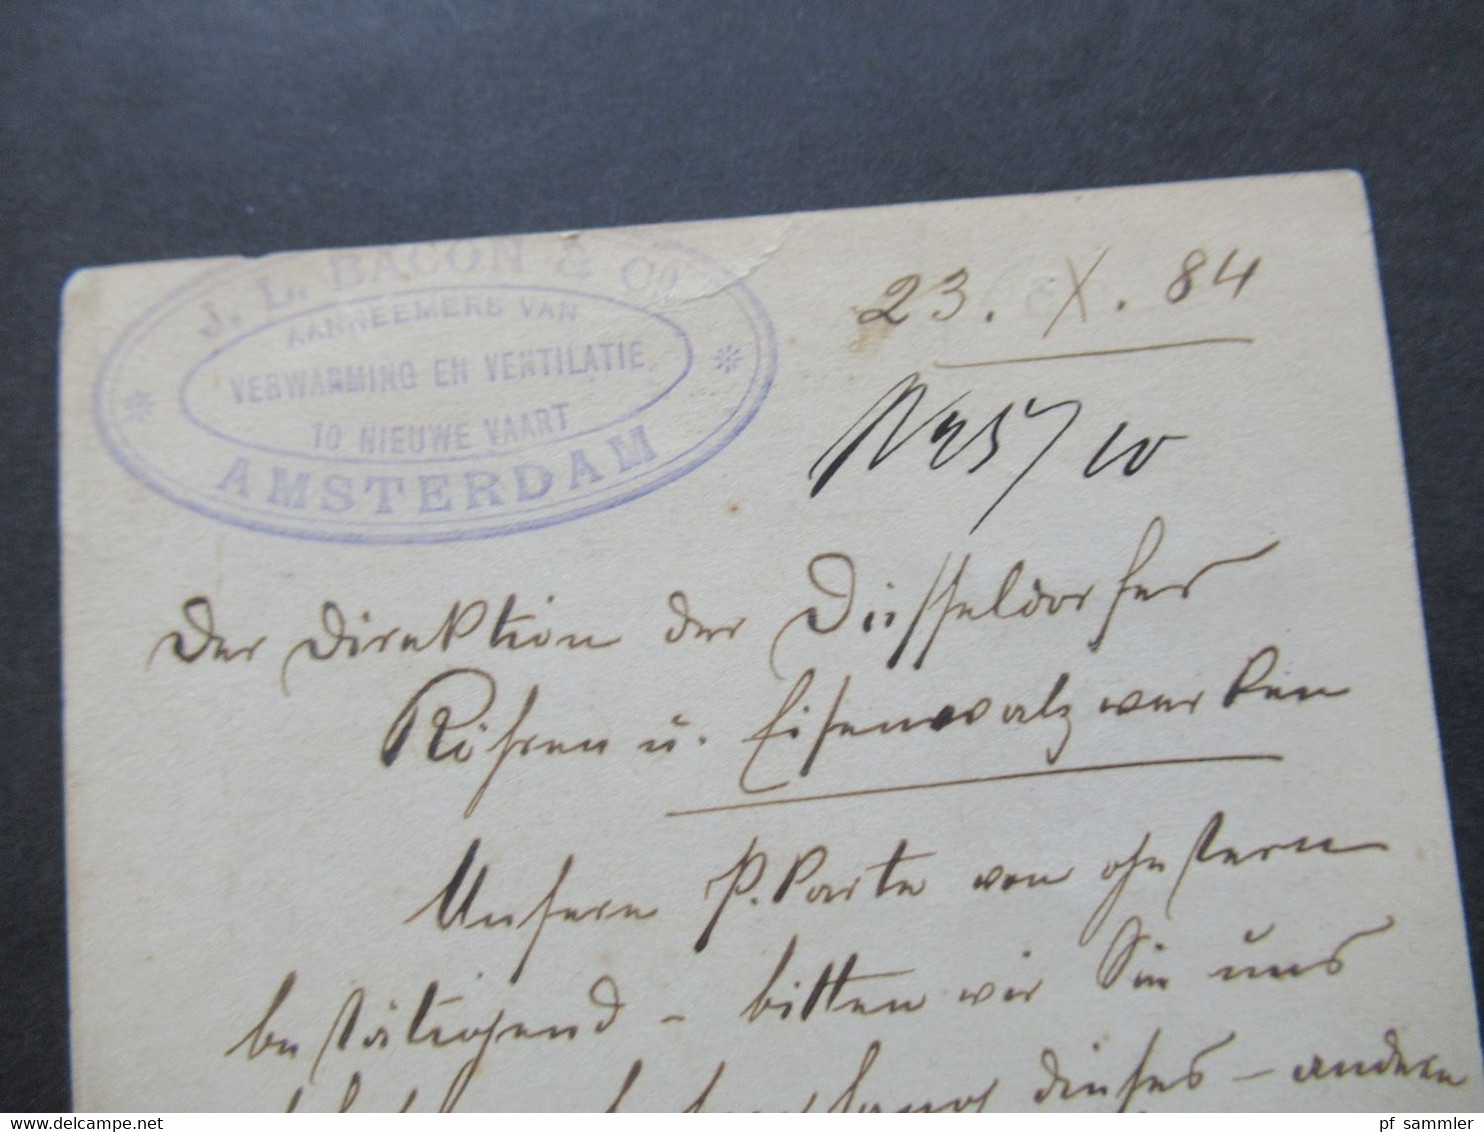 Niederlande 1884 Ganzsache Mit Zusatzfrankatur Auslands PK Amsterdam Nach Düsseldorf Oberbilk Mit Ank. Stempel - Cartas & Documentos